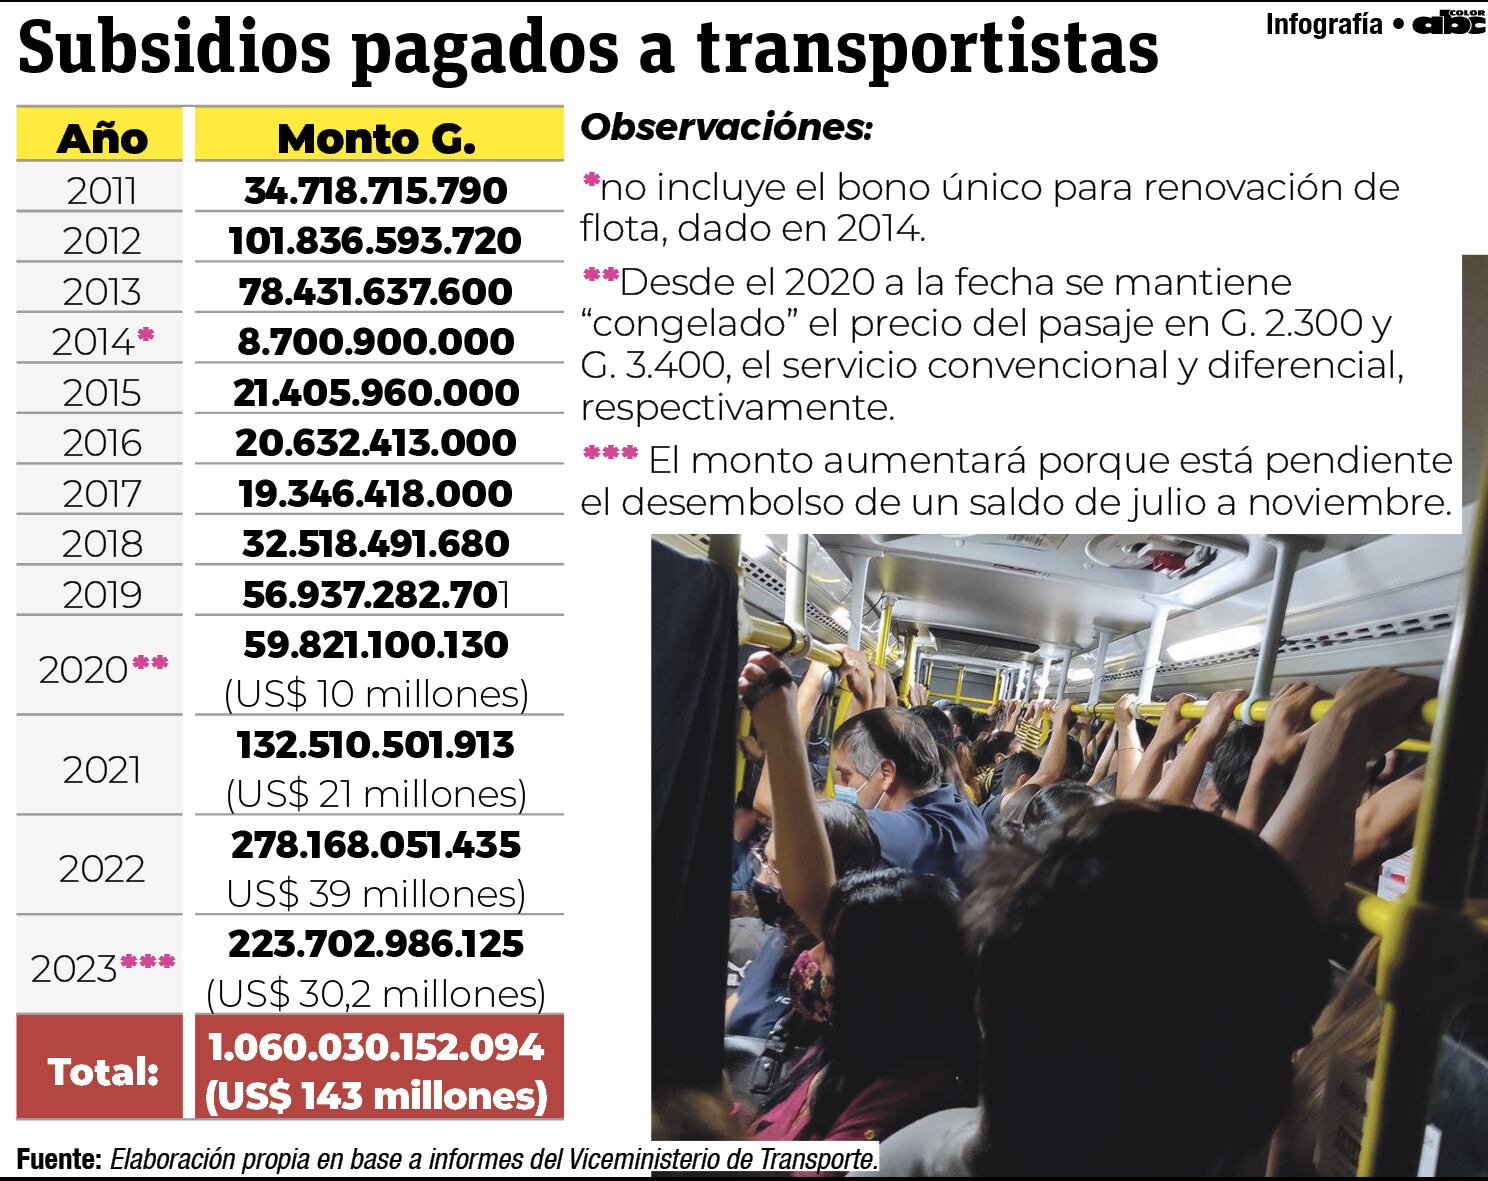 Evolución de los subsidios al transporte público del Área Metropolitana con dinero de los contribuyentes de todo el país.